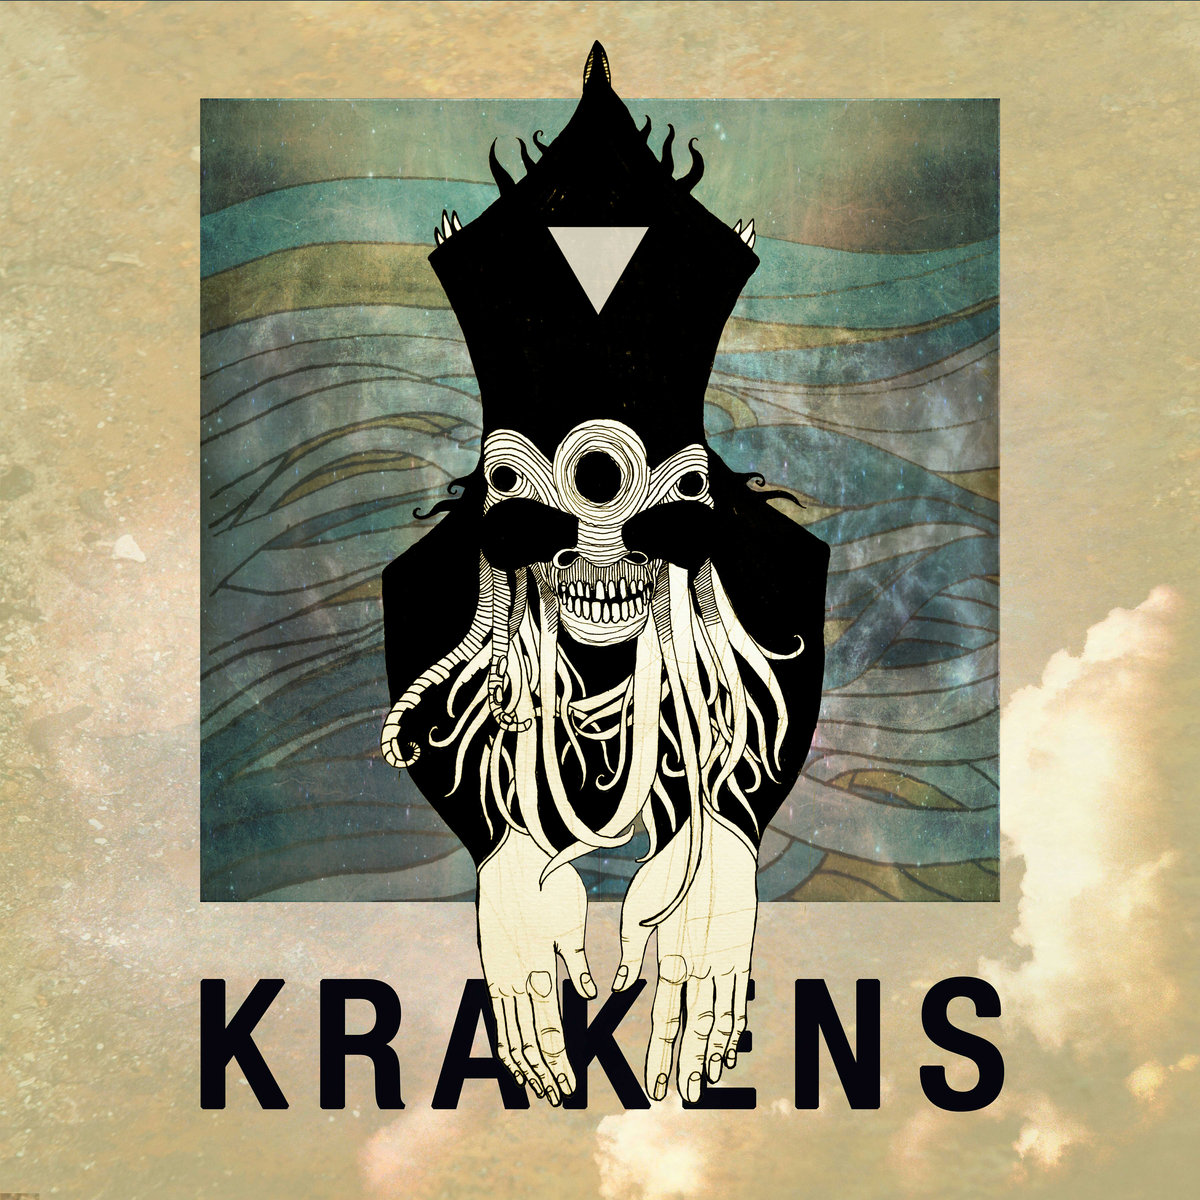 Krakens__shintoma___maestro_shak__presentan_krakens